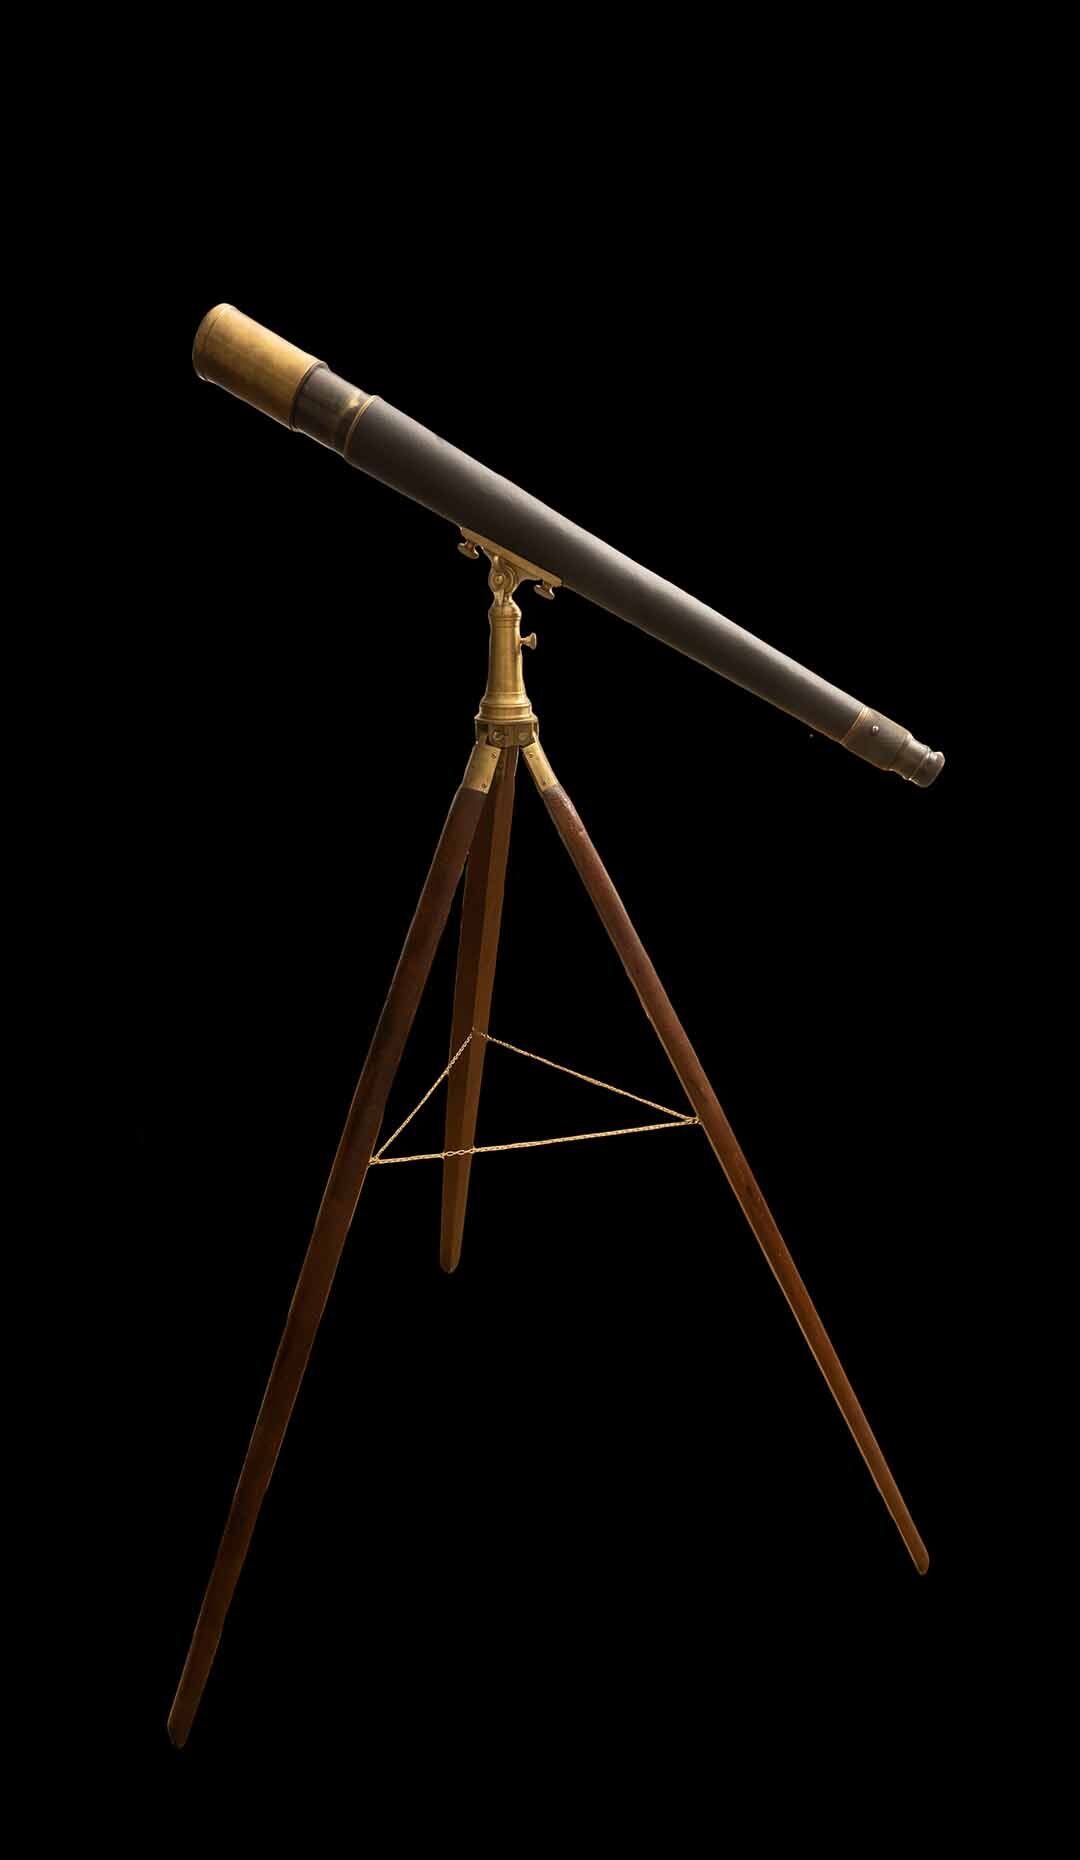 W. Ottway Telescope from World War II